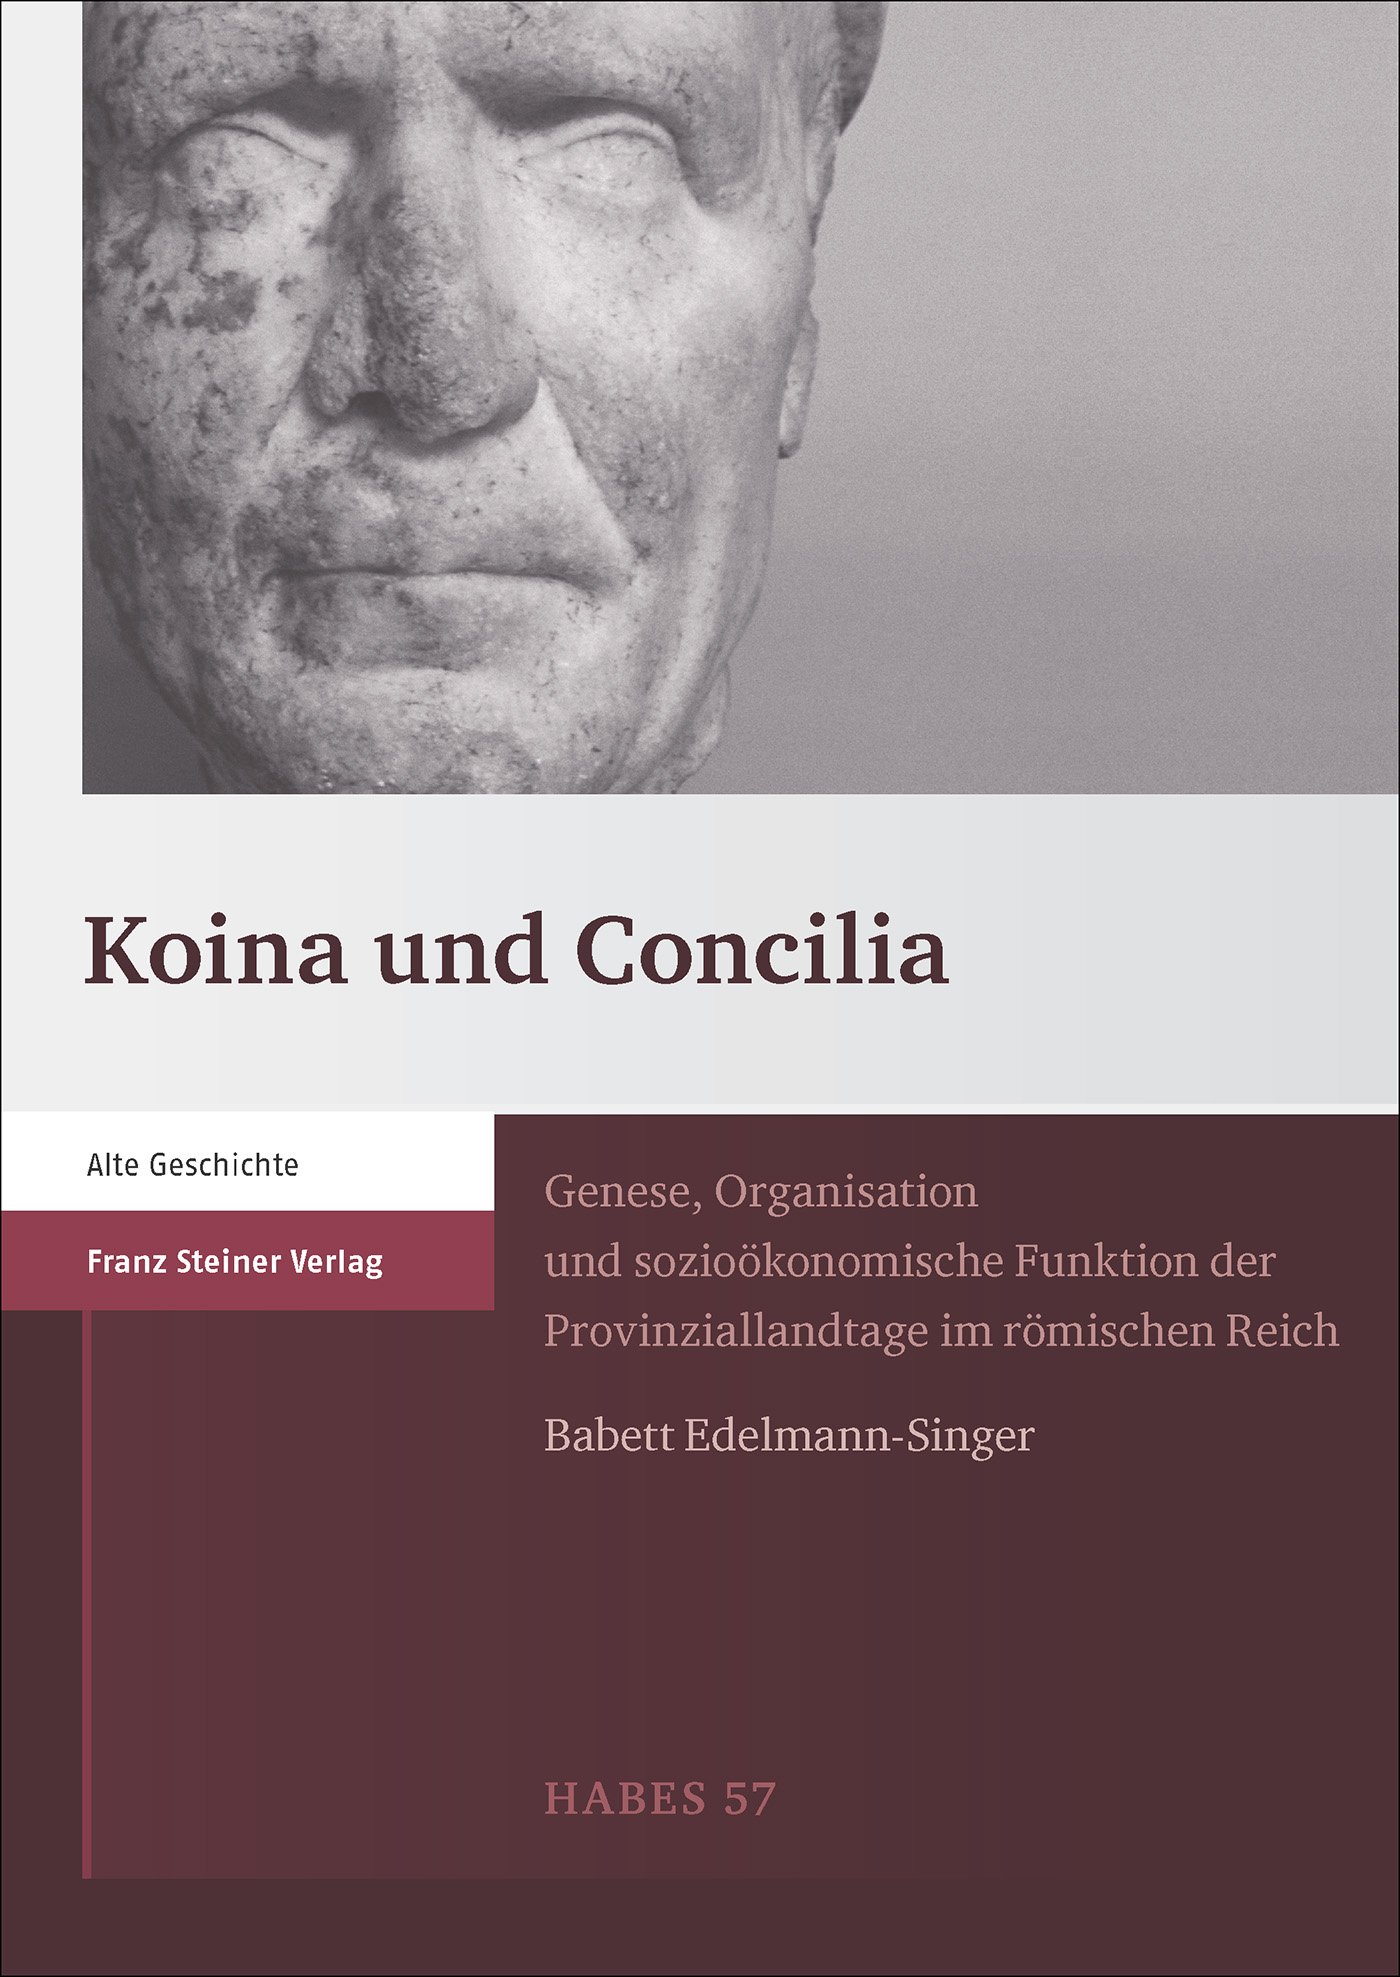 Koina und Concilia